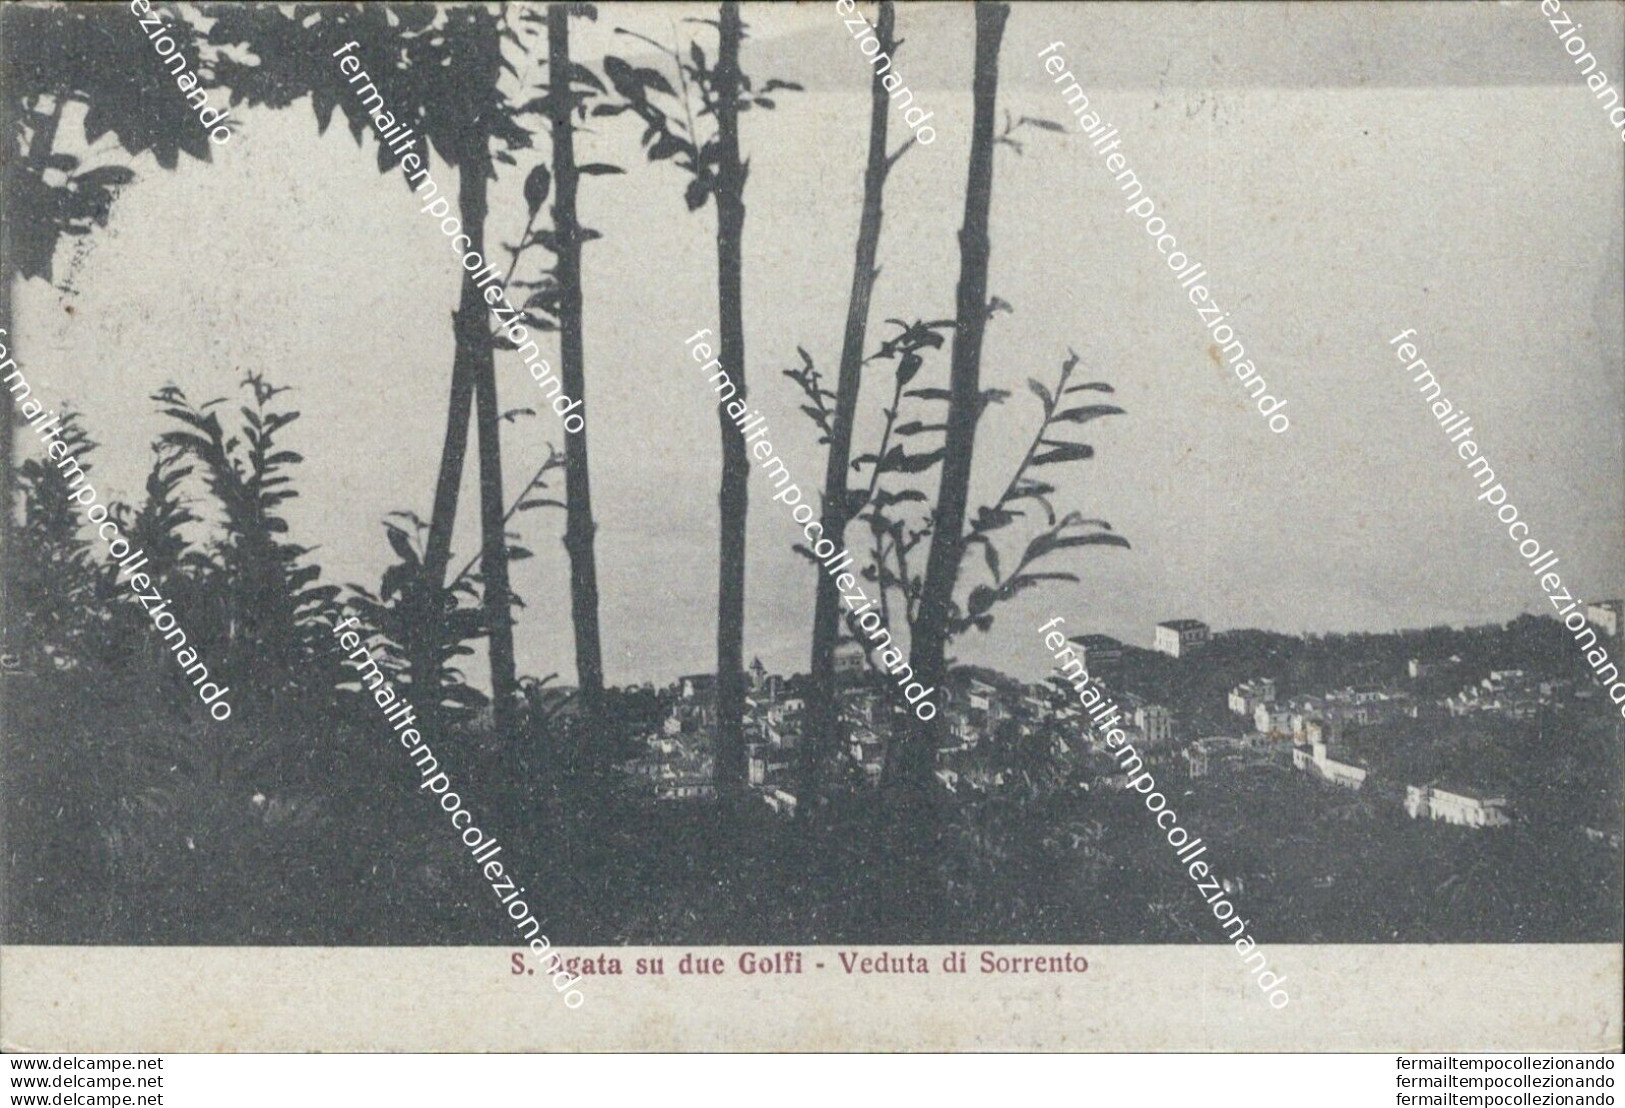 Bf382 Cartolina S.agata Su Deu Golfi Veduta Di Sorrento Provincia Di Napoli 1927 - Napoli (Naples)